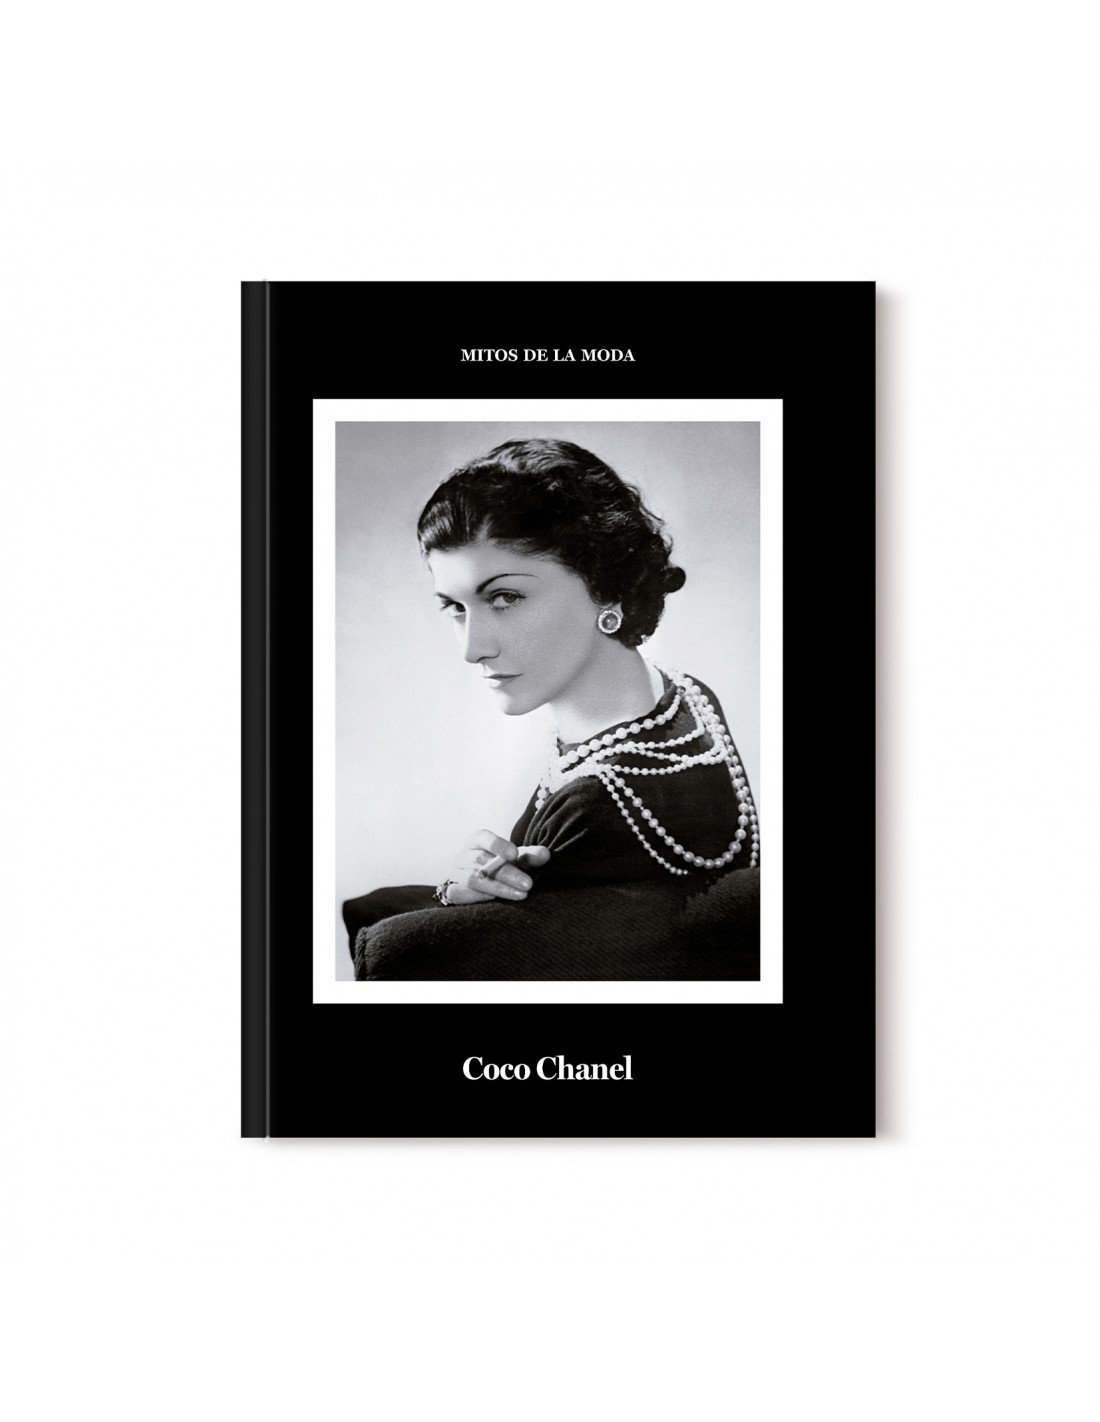 Coco Chanel, Mitos de la moda